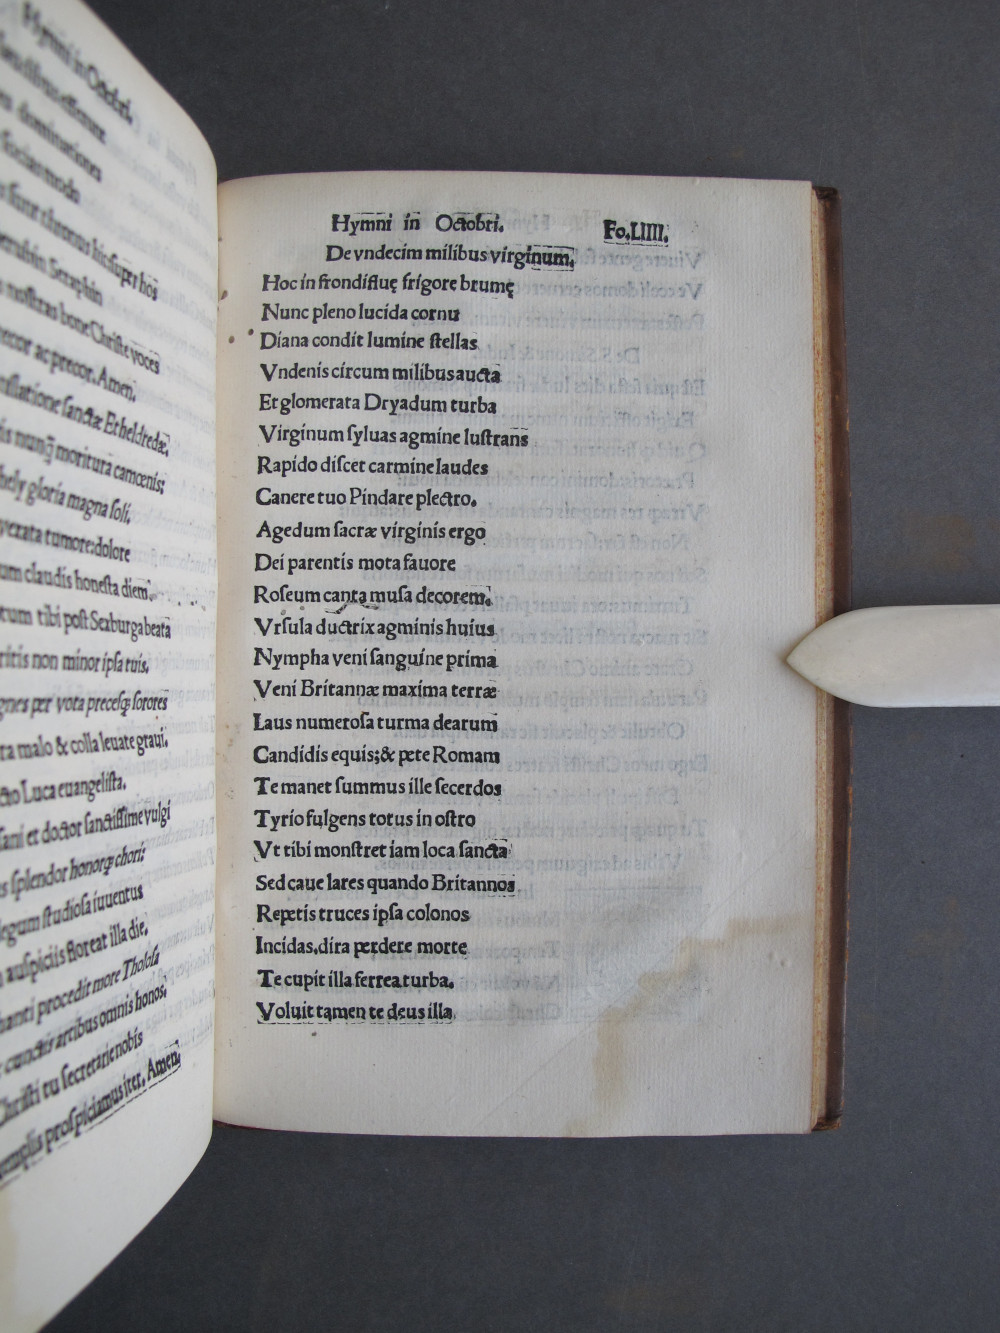 Folio 54 recto